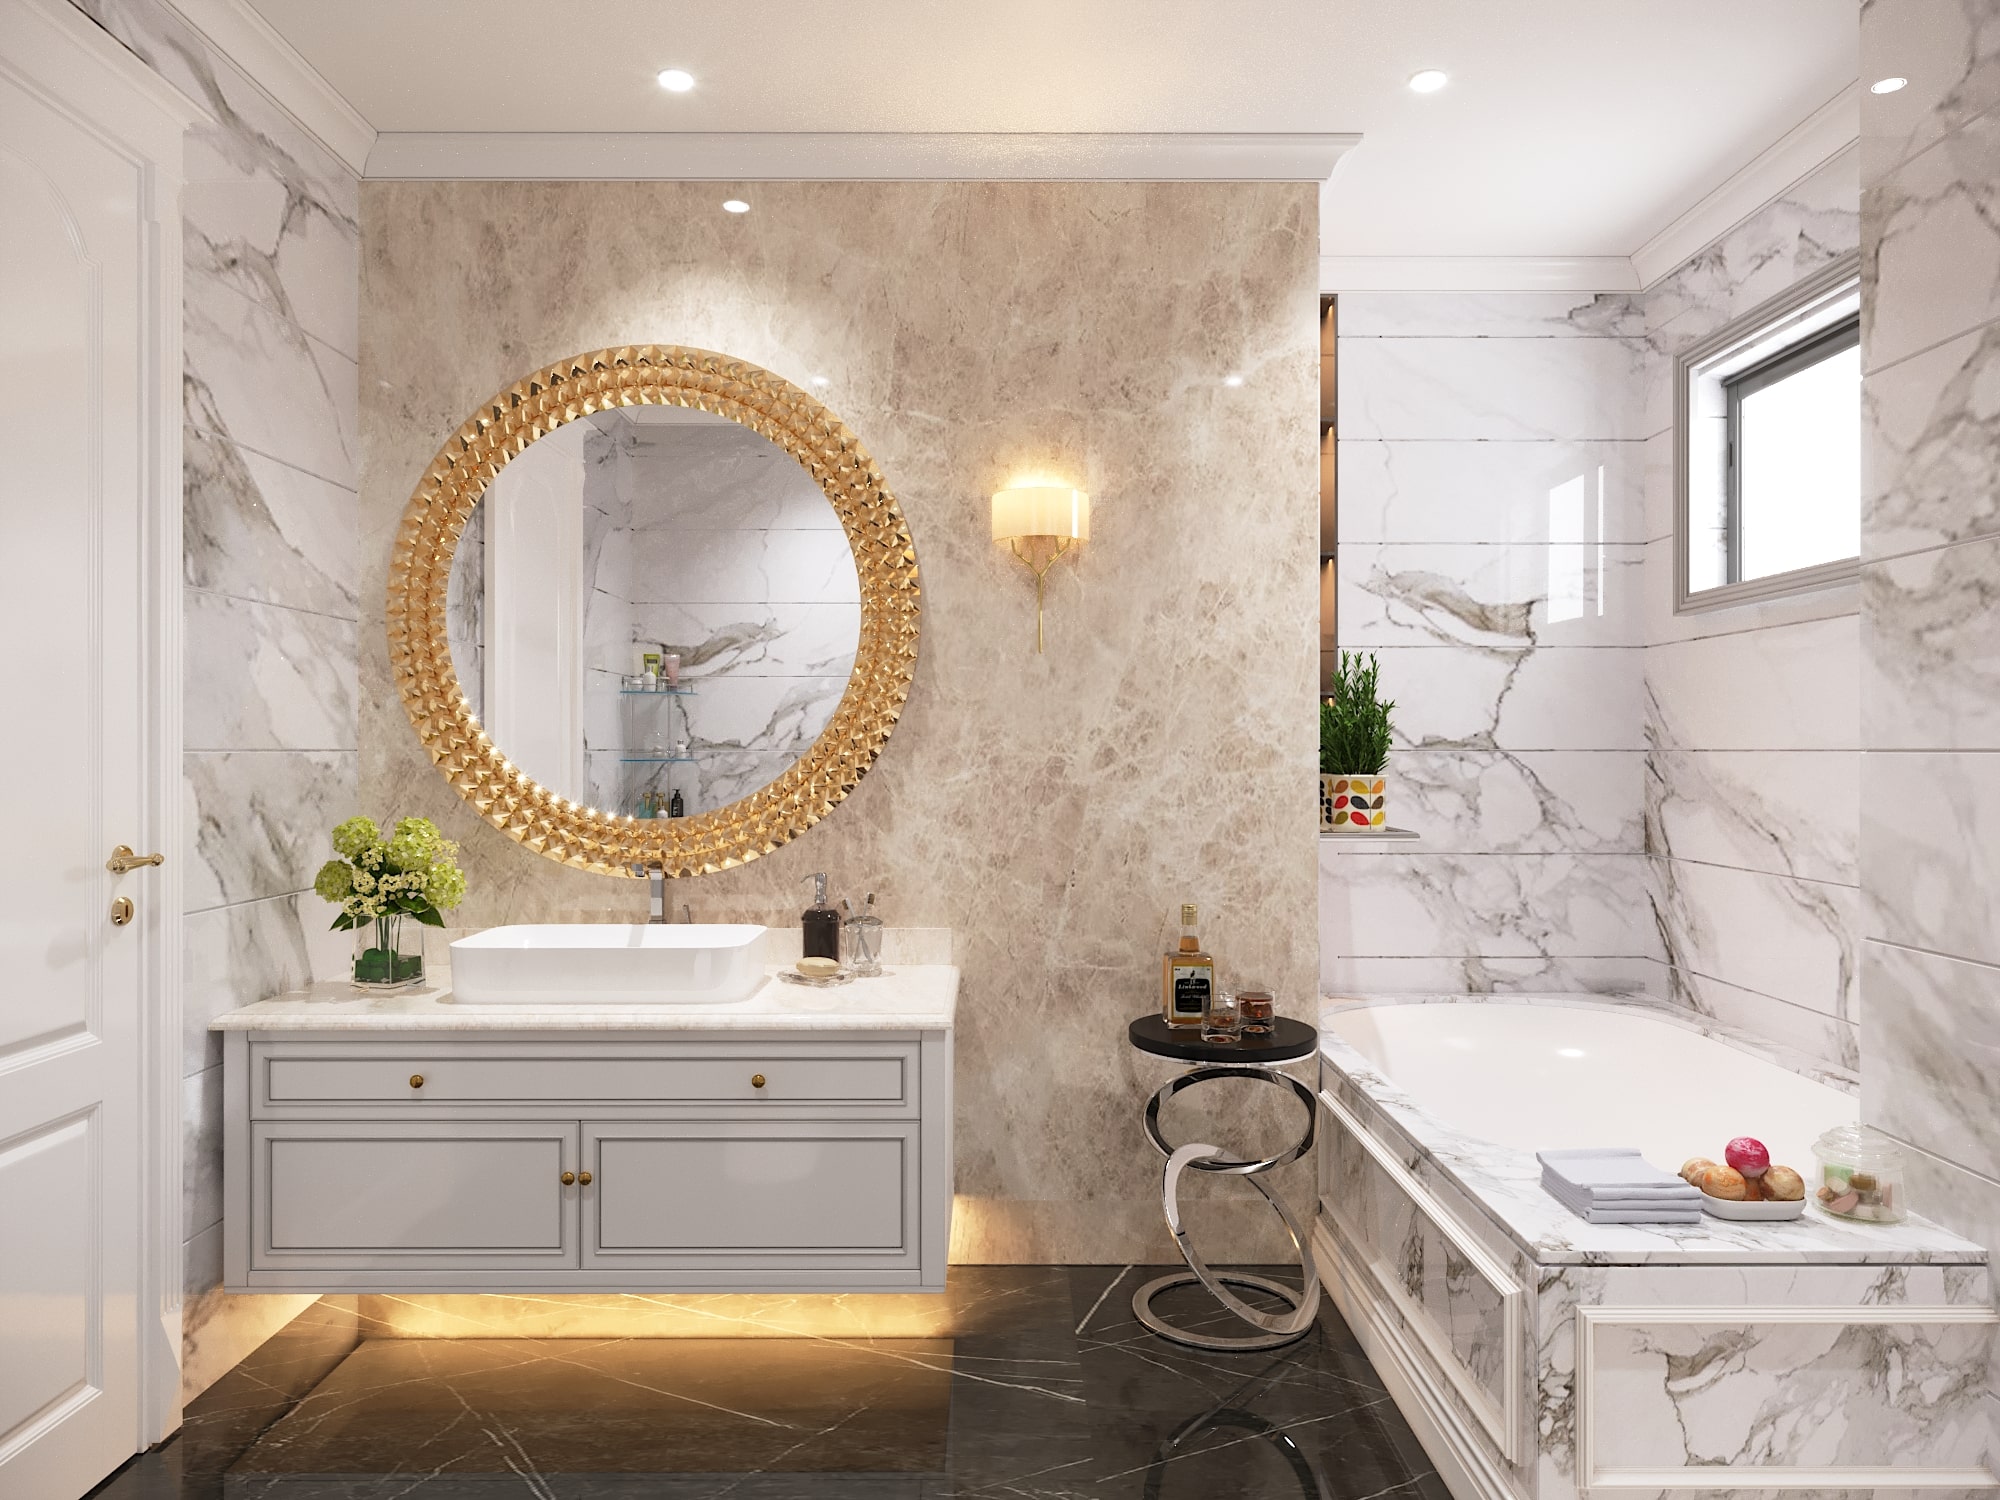 Đèn trang trí phòng tắm: Với những sáng tạo mới trong năm 2024, đèn trang trí phòng tắm đã trở thành một phần không thể thiếu trong bất kỳ thiết kế phòng tắm nào. Chúng giúp tăng tính thẩm mỹ của phòng tắm và tạo ra một không gian ấm cúng, thoải mái. Với sự đa dạng về màu sắc và kiểu dáng, bạn có thể dễ dàng tìm ra bộ đèn trang trí tương thích với thiết kế của bạn. Hãy tìm hiểu thêm về đèn trang trí phòng tắm tại ảnh đính kèm!